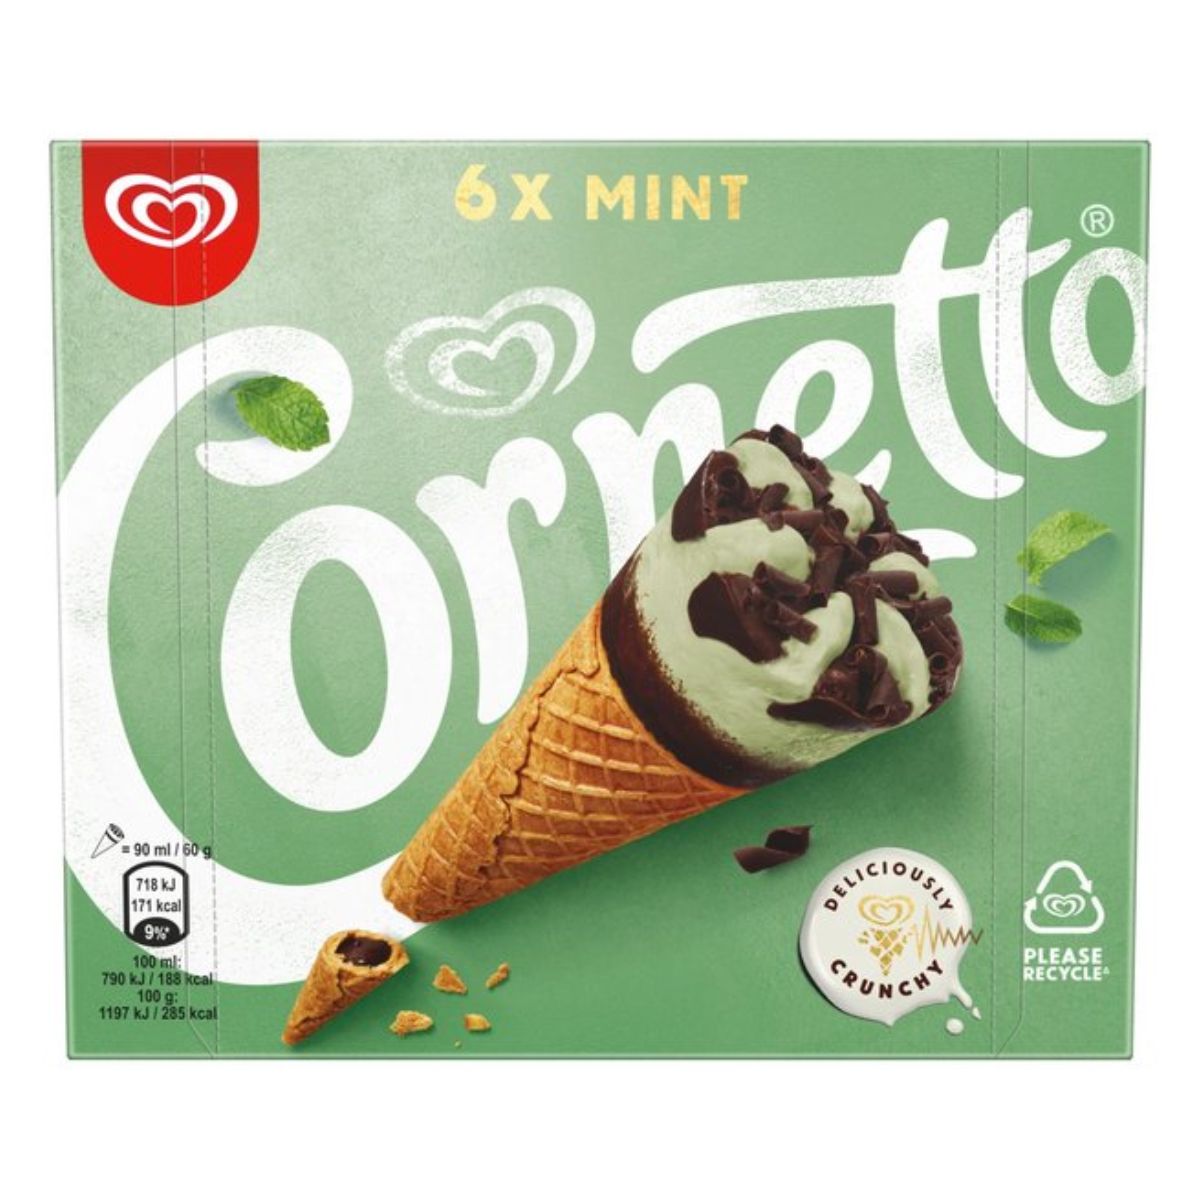 A box of Cornetto - Mint Ice Cream Cones - 6pcs.